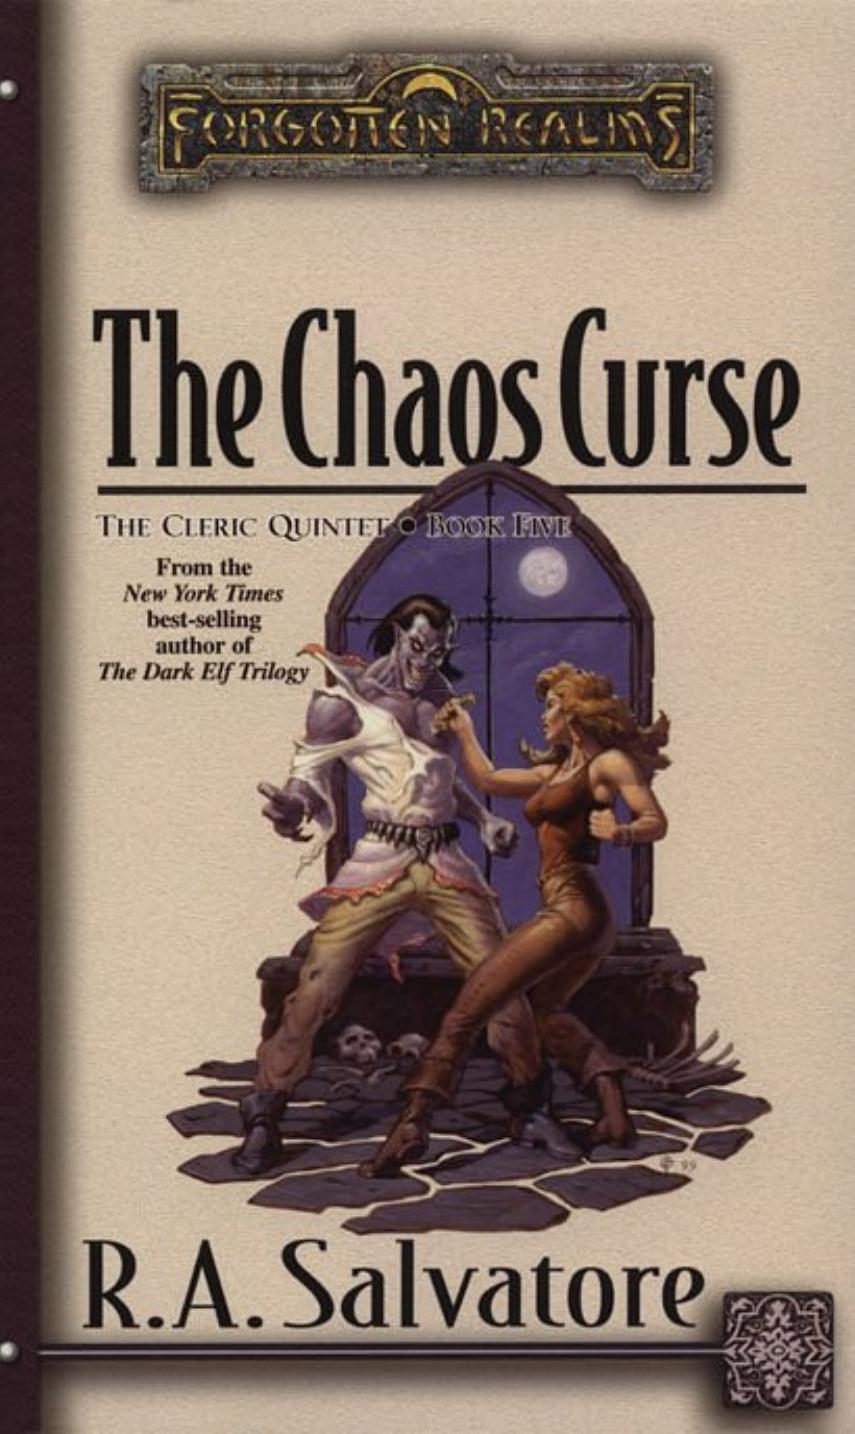 The Chaos Curse